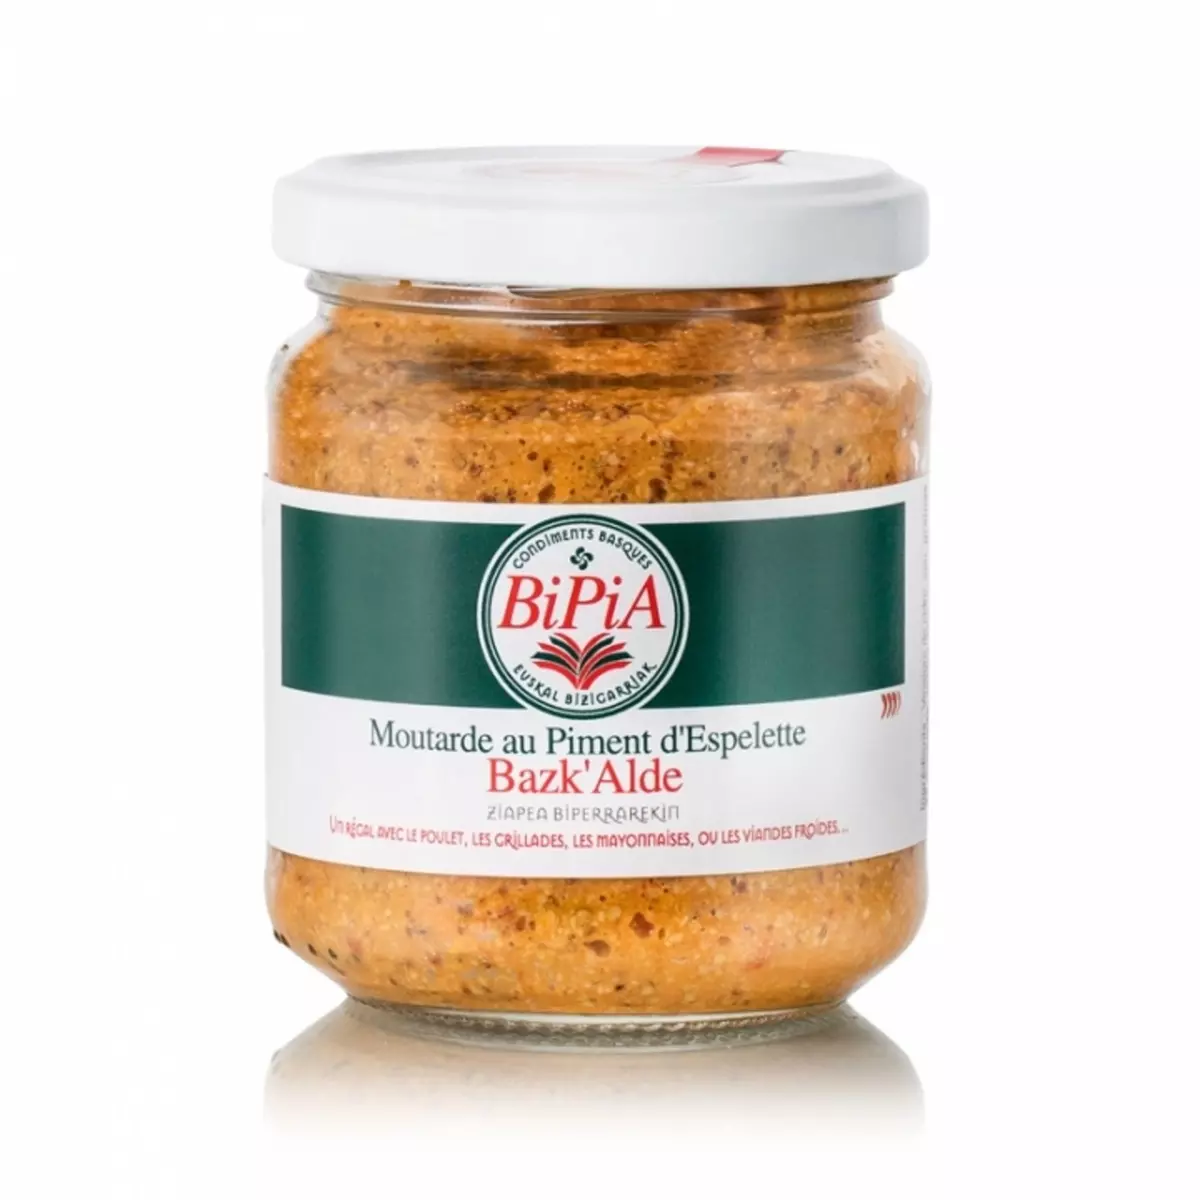 BIPIA Bazk'Alde Moutarde au piment d'Espelette 90g